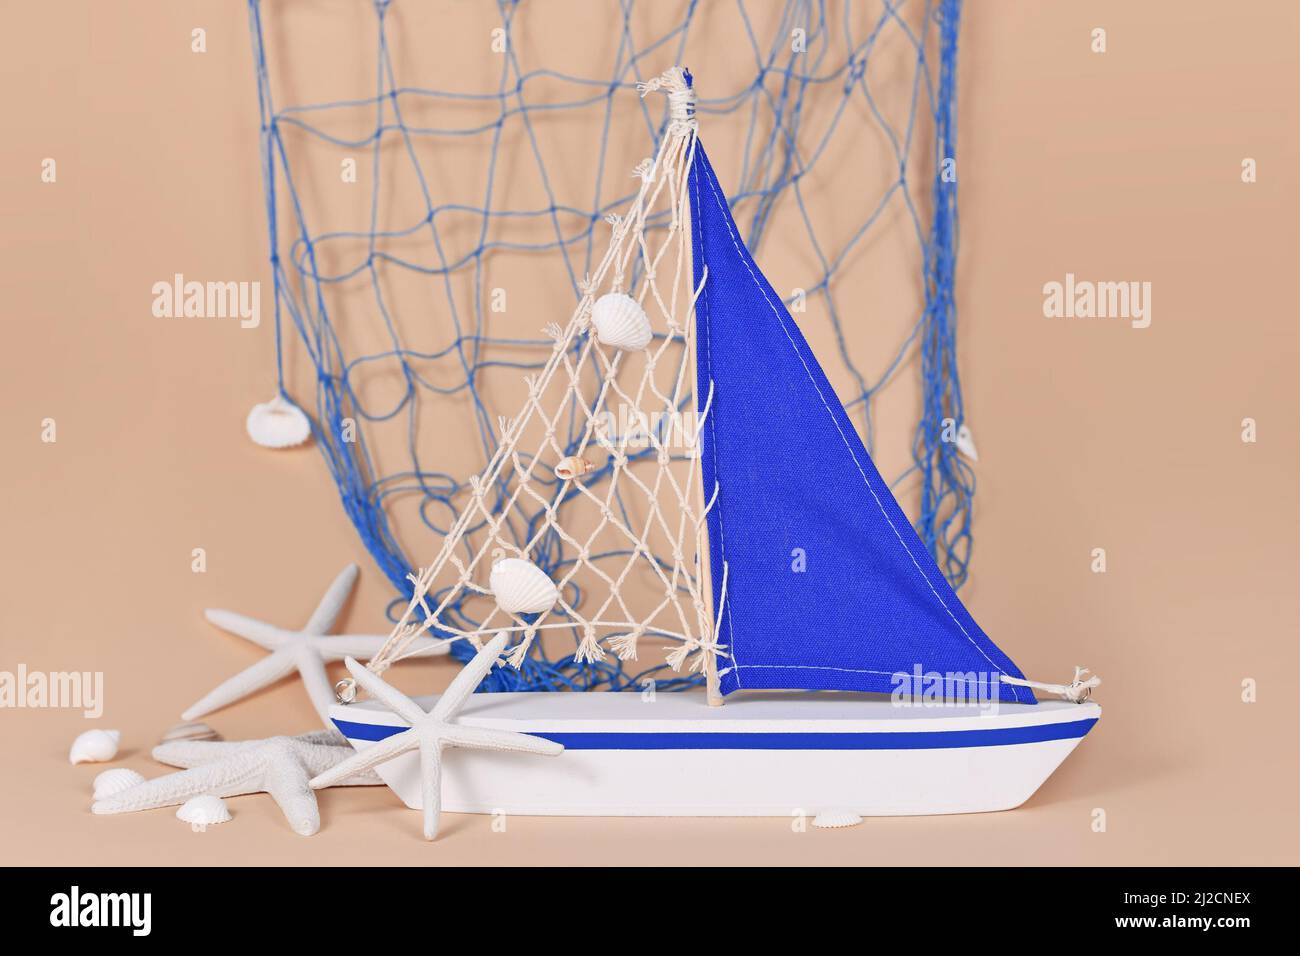 Kleine Segelbootdekoration mit Seesternen und Fischernetz Stockfoto